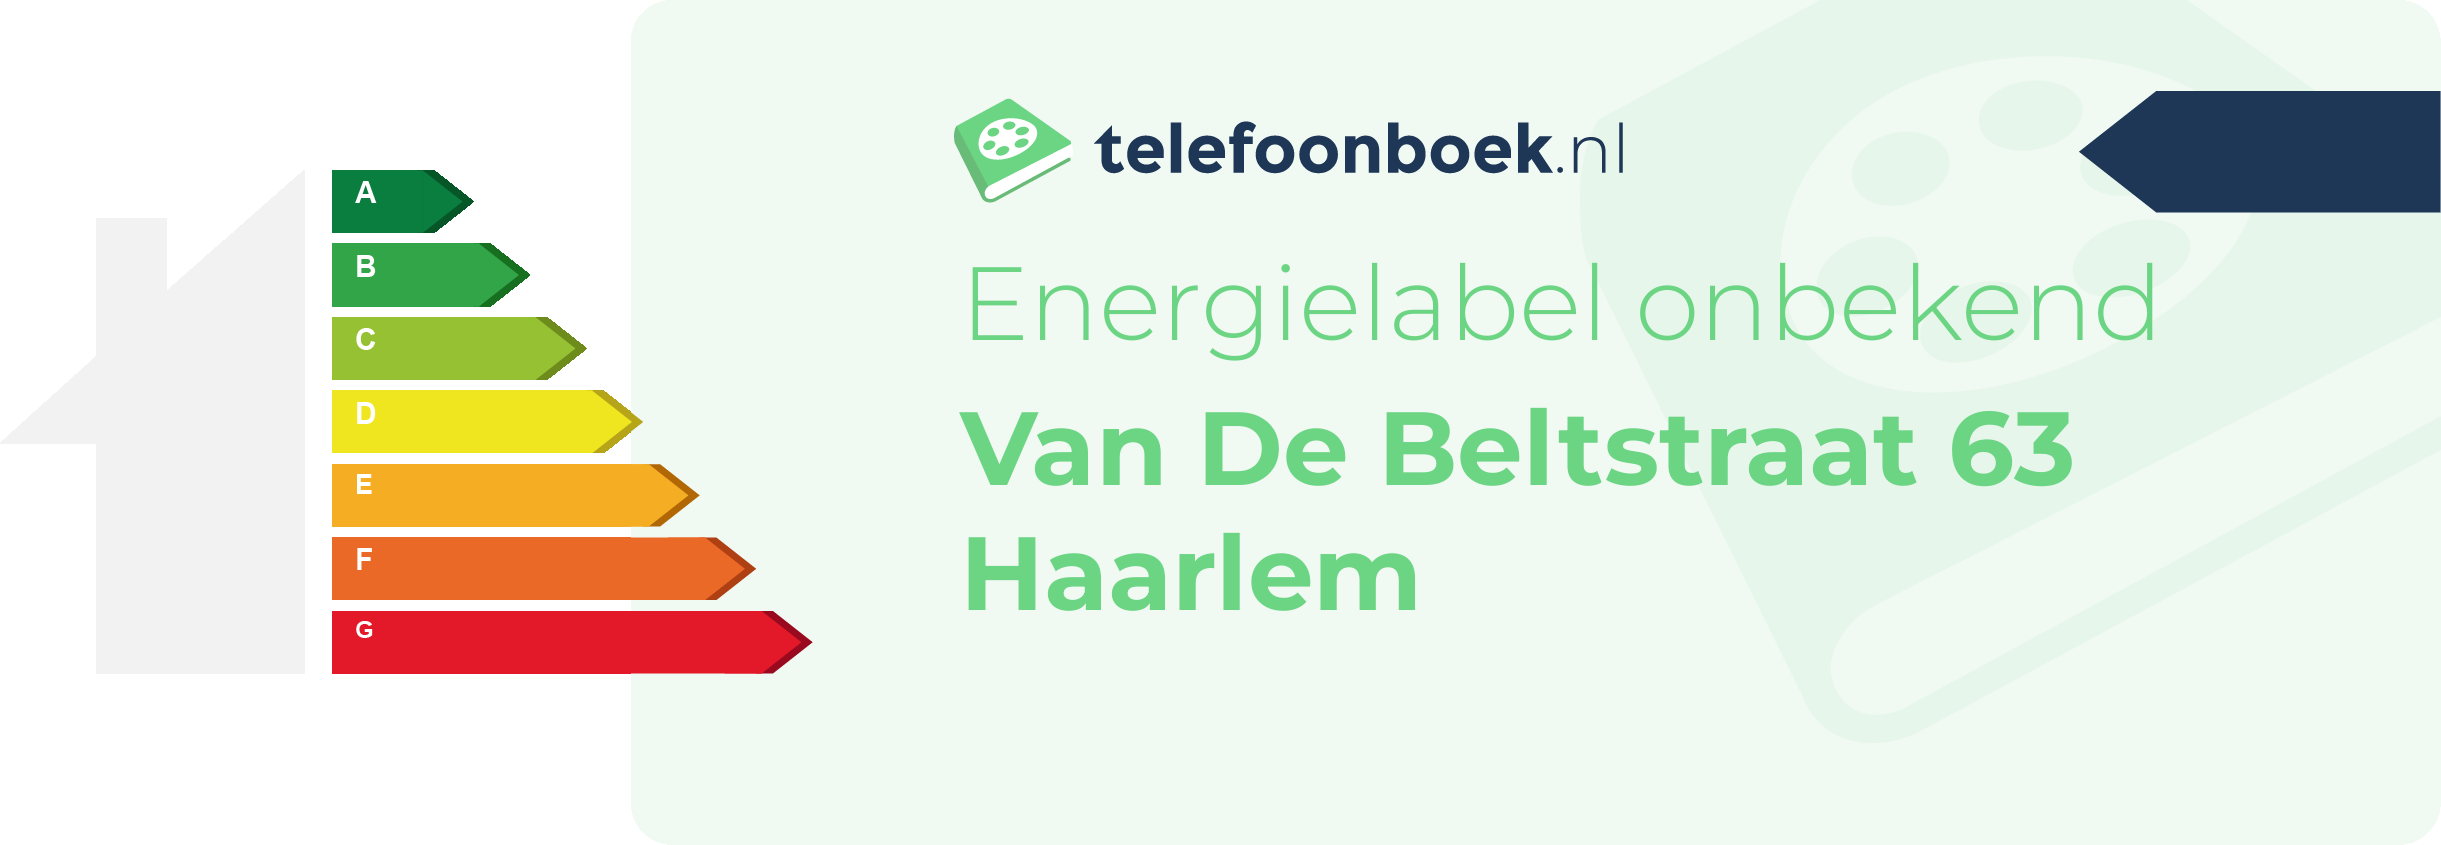 Energielabel Van De Beltstraat 63 Haarlem